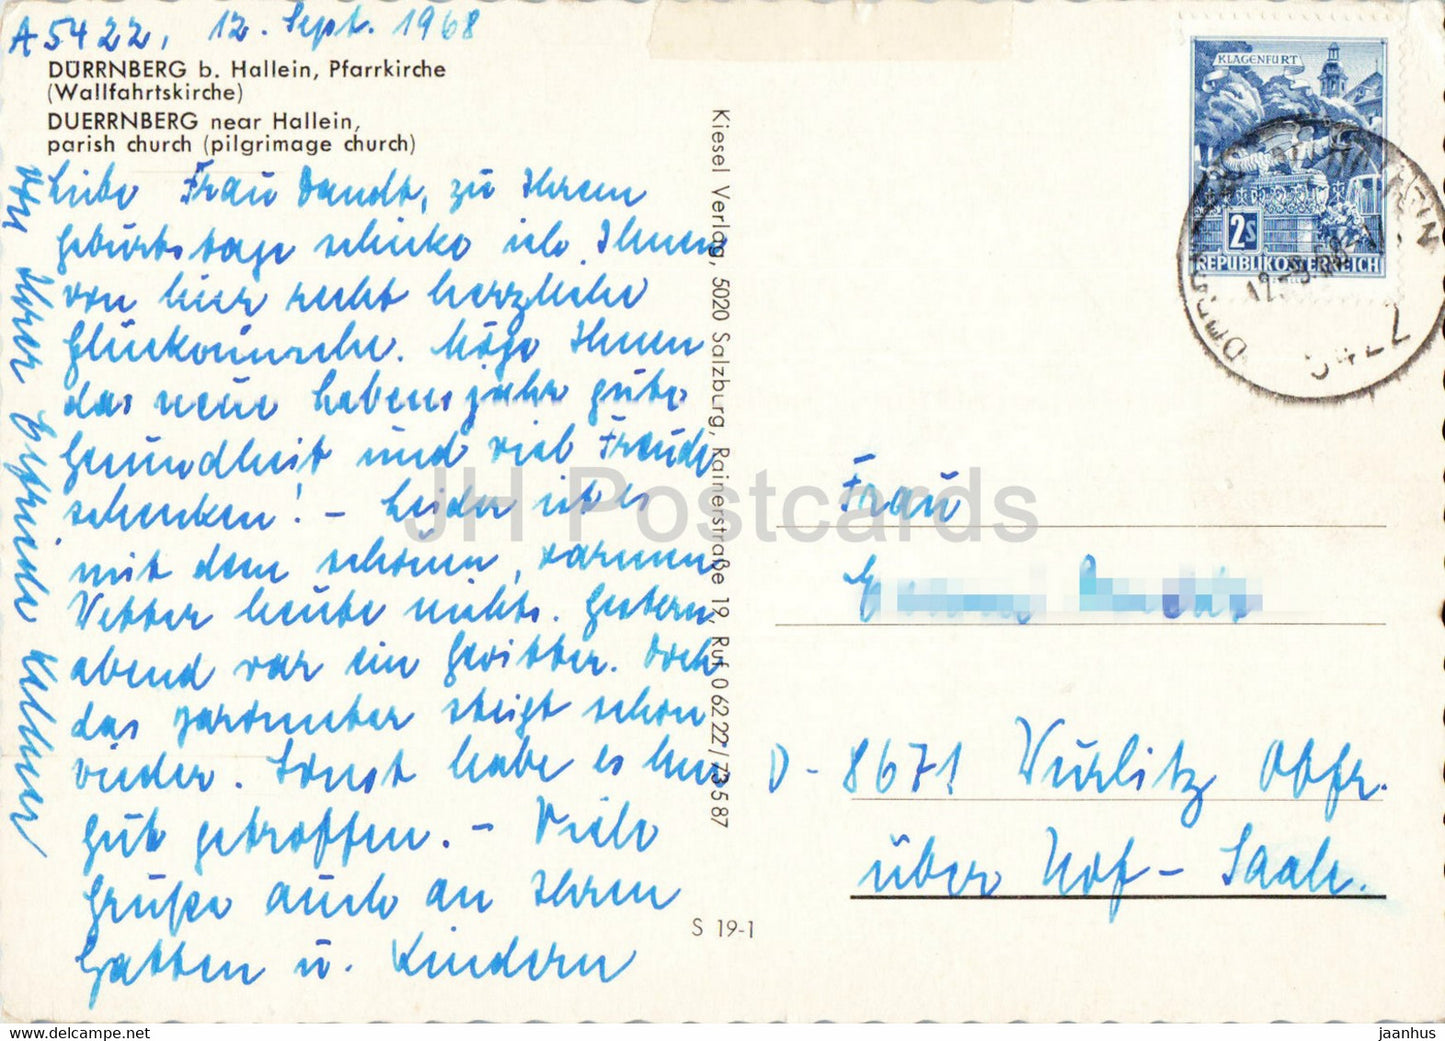 Durrnberg b Hallein - Pfarrkirche - église - carte postale ancienne - 1968 - Autriche - utilisé